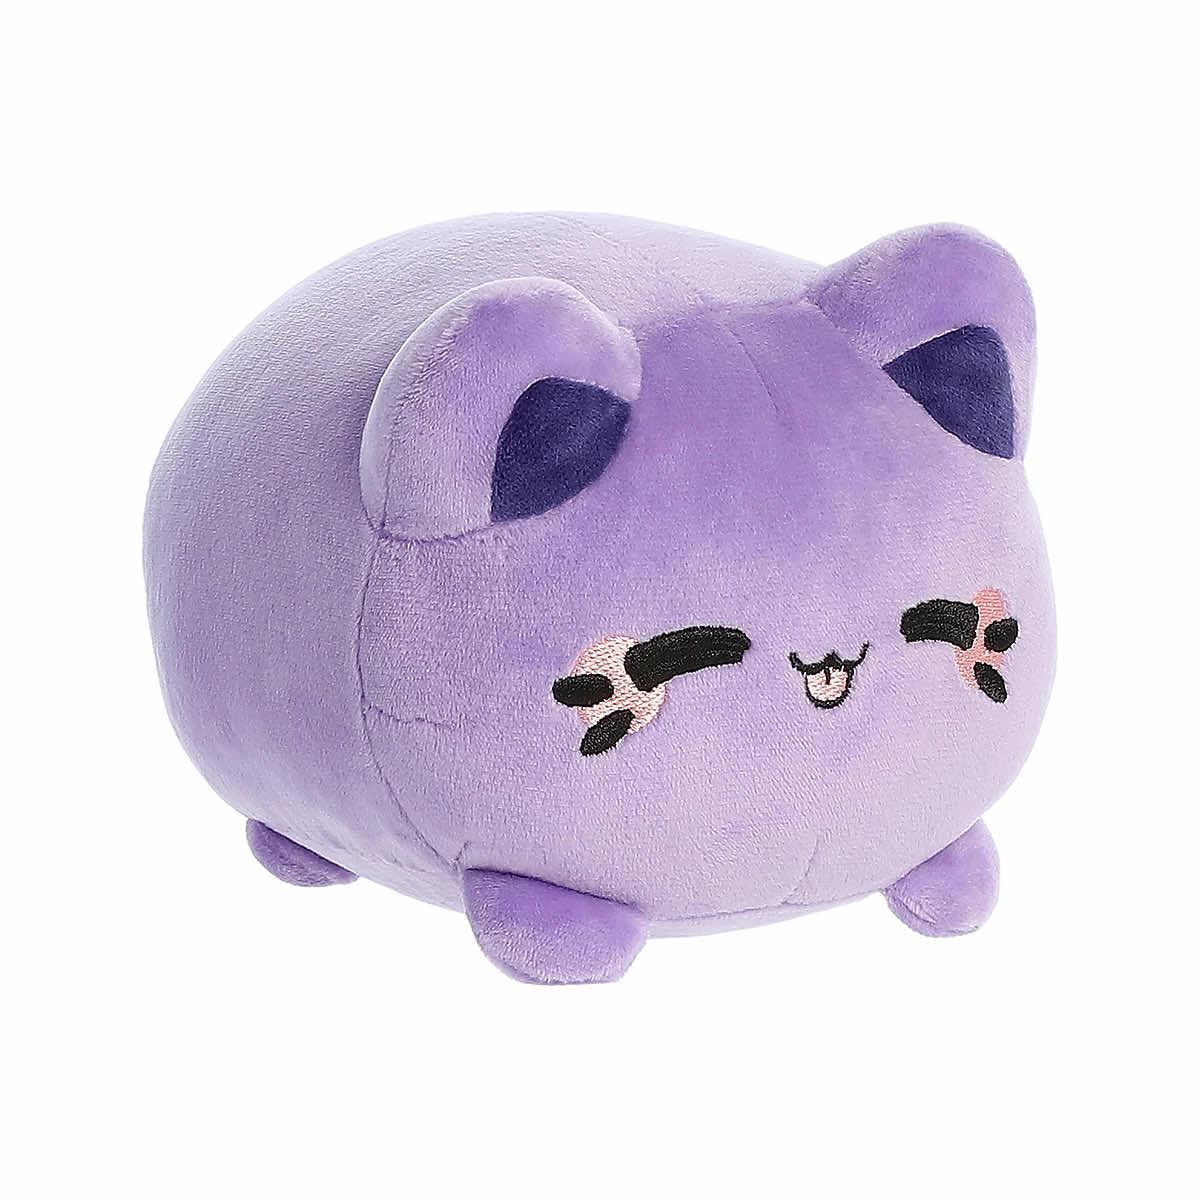  Ube Purple Yam Meowchi Plush Toy